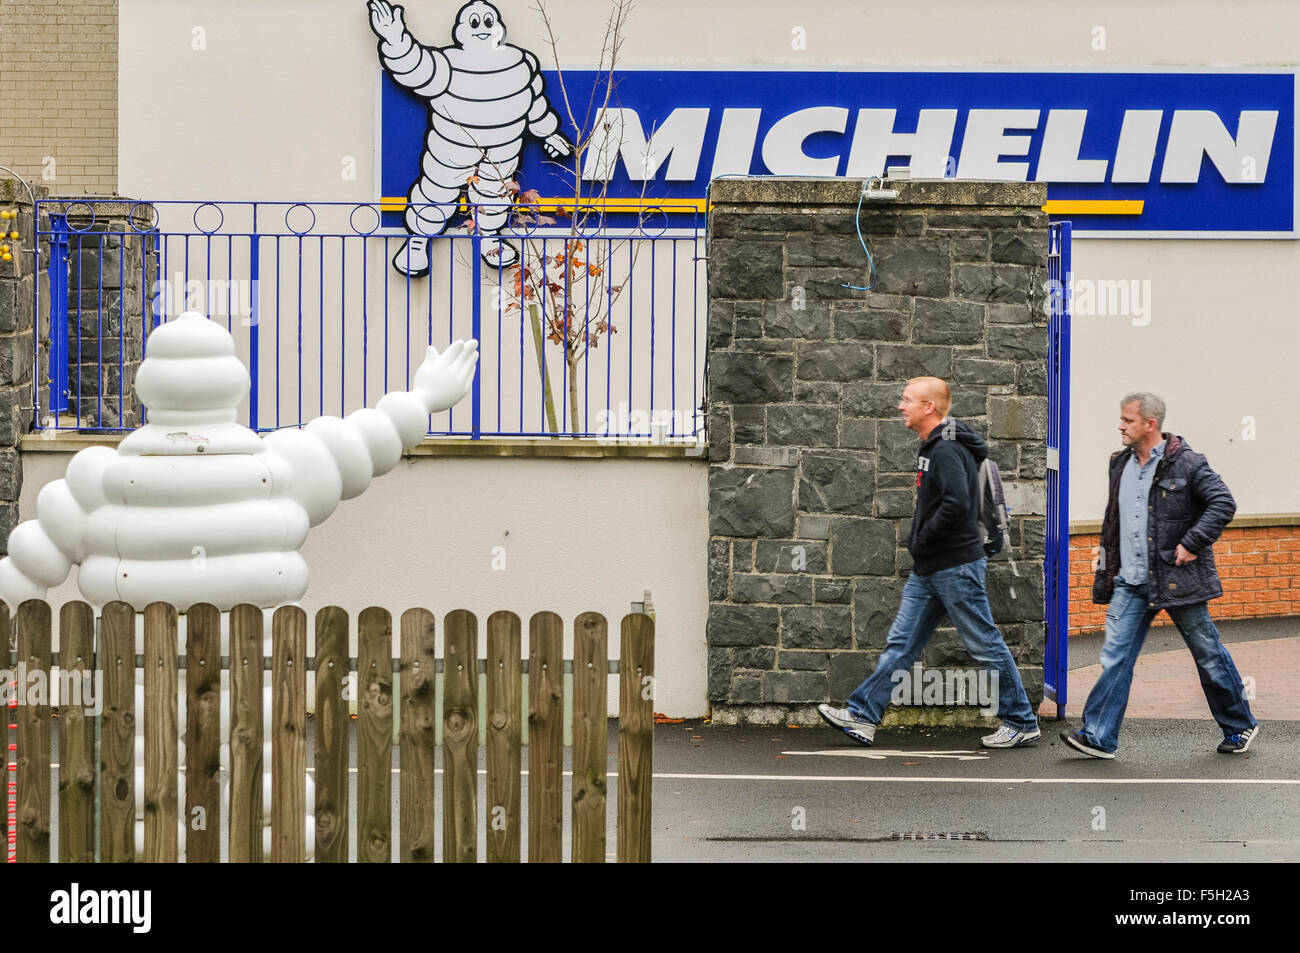 Ballymena, Irlanda del Nord. 03 nov 2015 - Lavoratori lasciare dopo aver ricevuto notizie che Michelin chiuderà la loro fabbrica di Ballymena nel 2018 con oltre 900 licenziamenti Credit: stephen Barnes/Alamy Live News Foto Stock